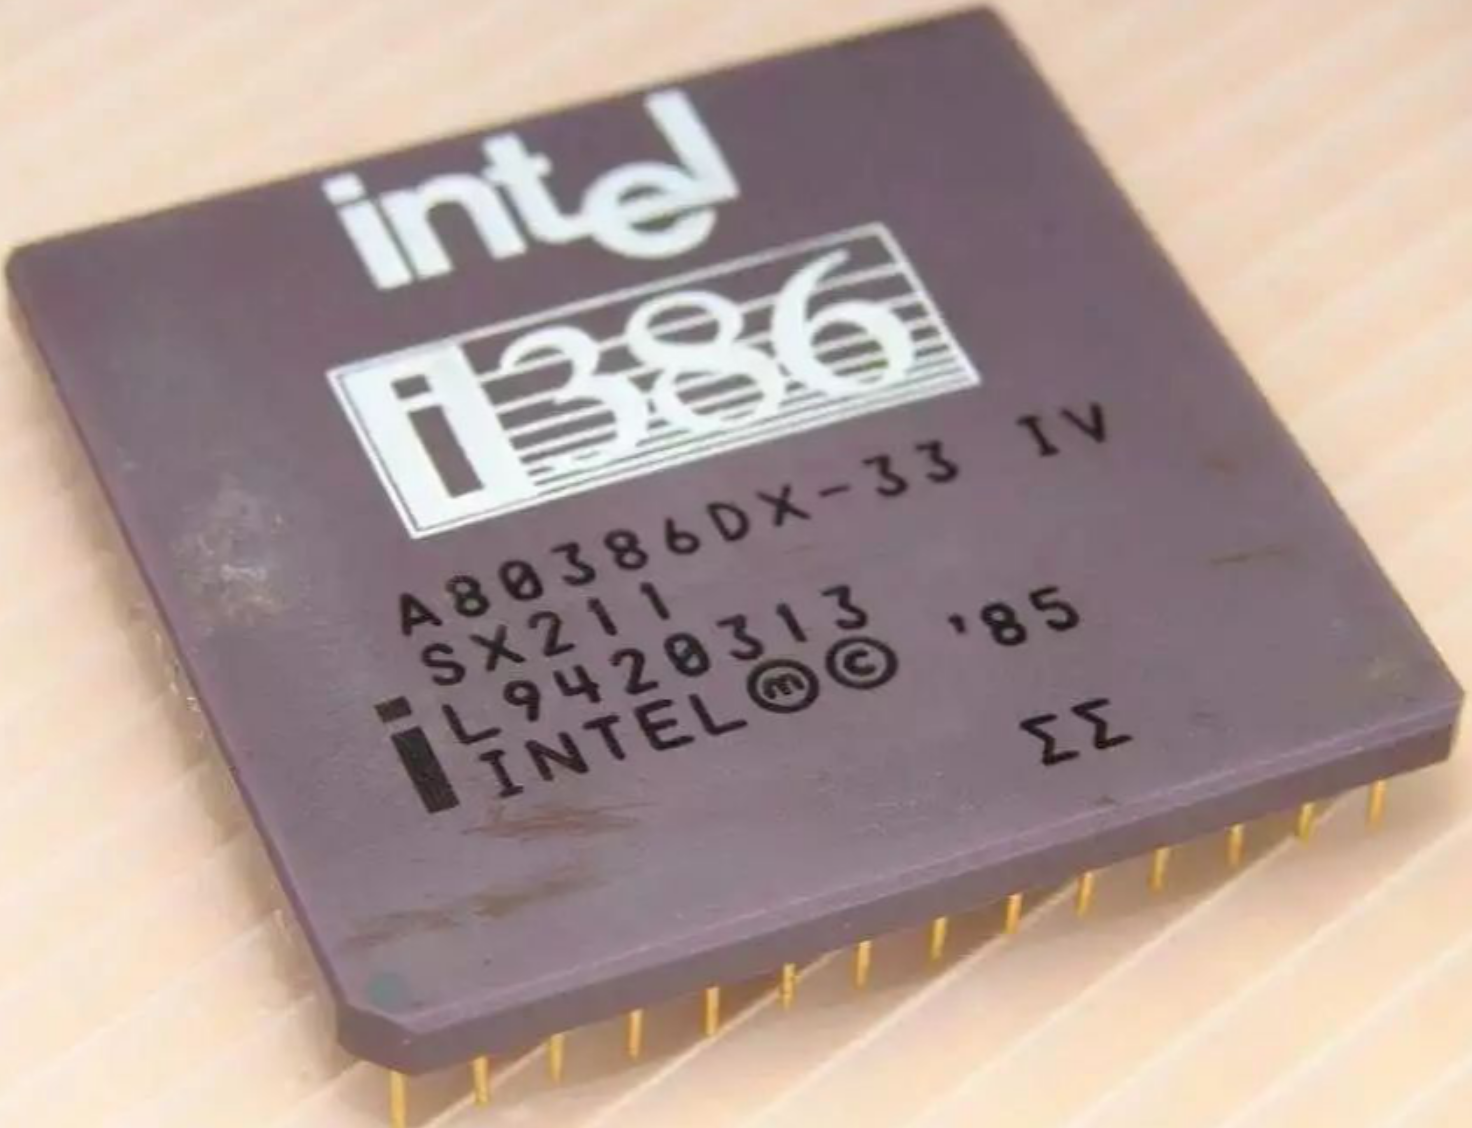 Intel 80386